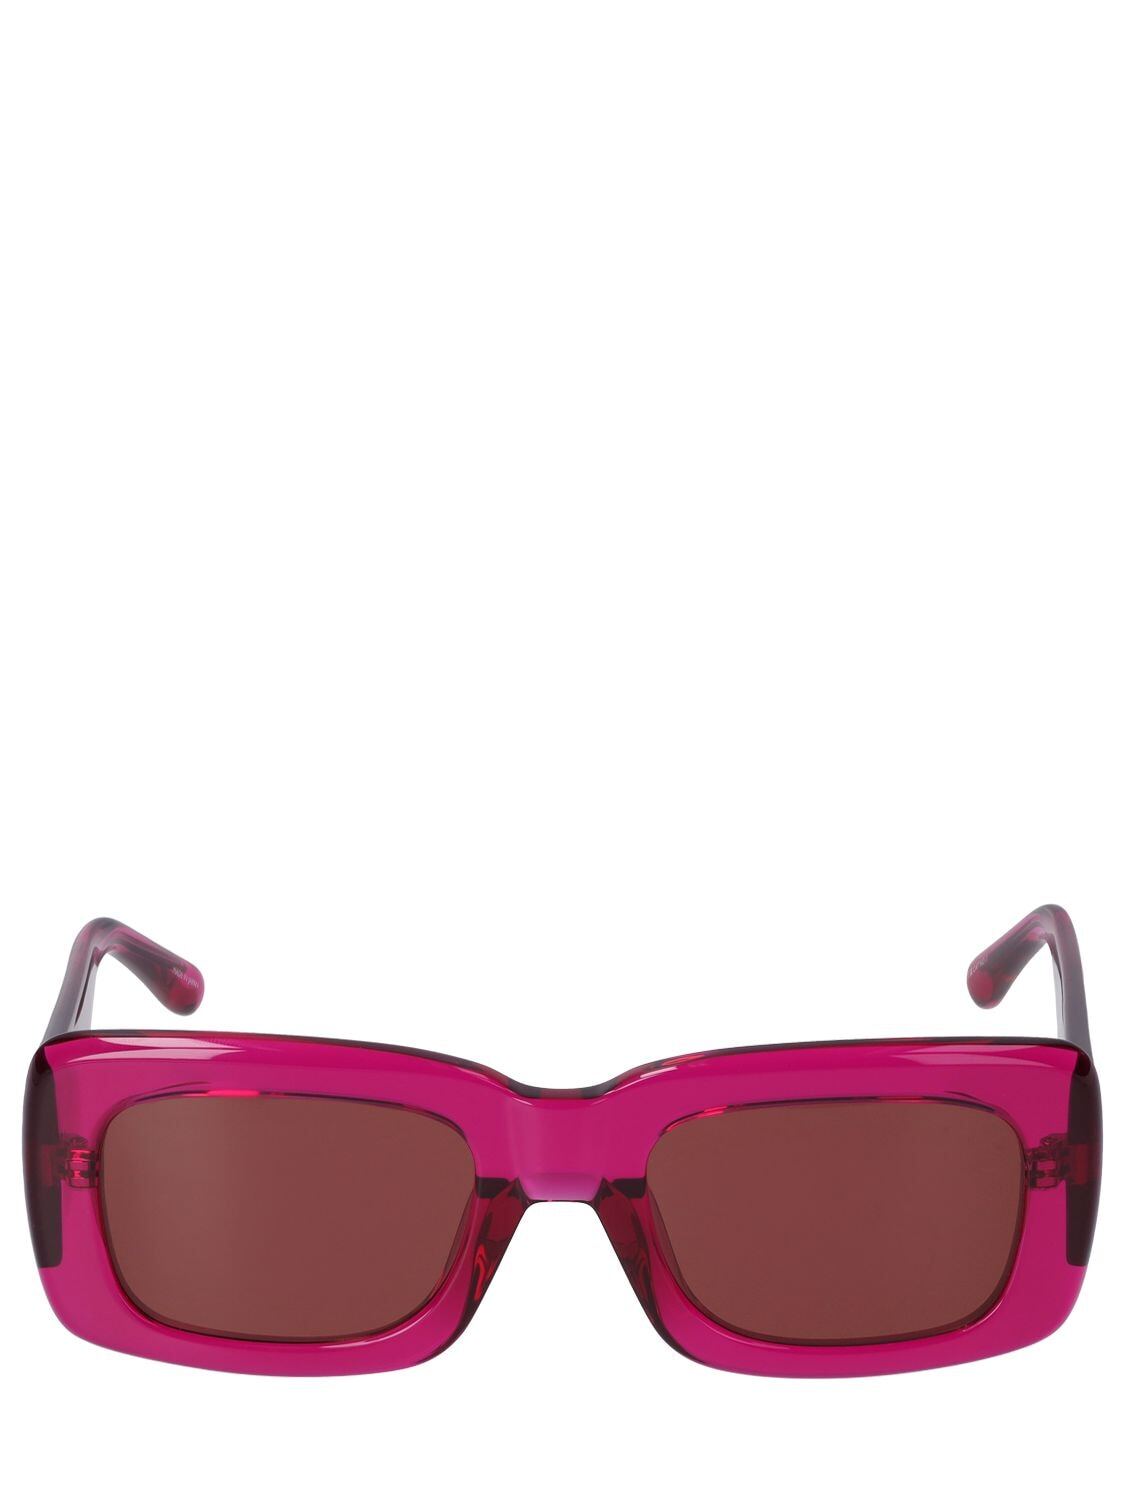 THE ATTICO Marfa Squared Acetate Sunglasses in brown / fuchsia